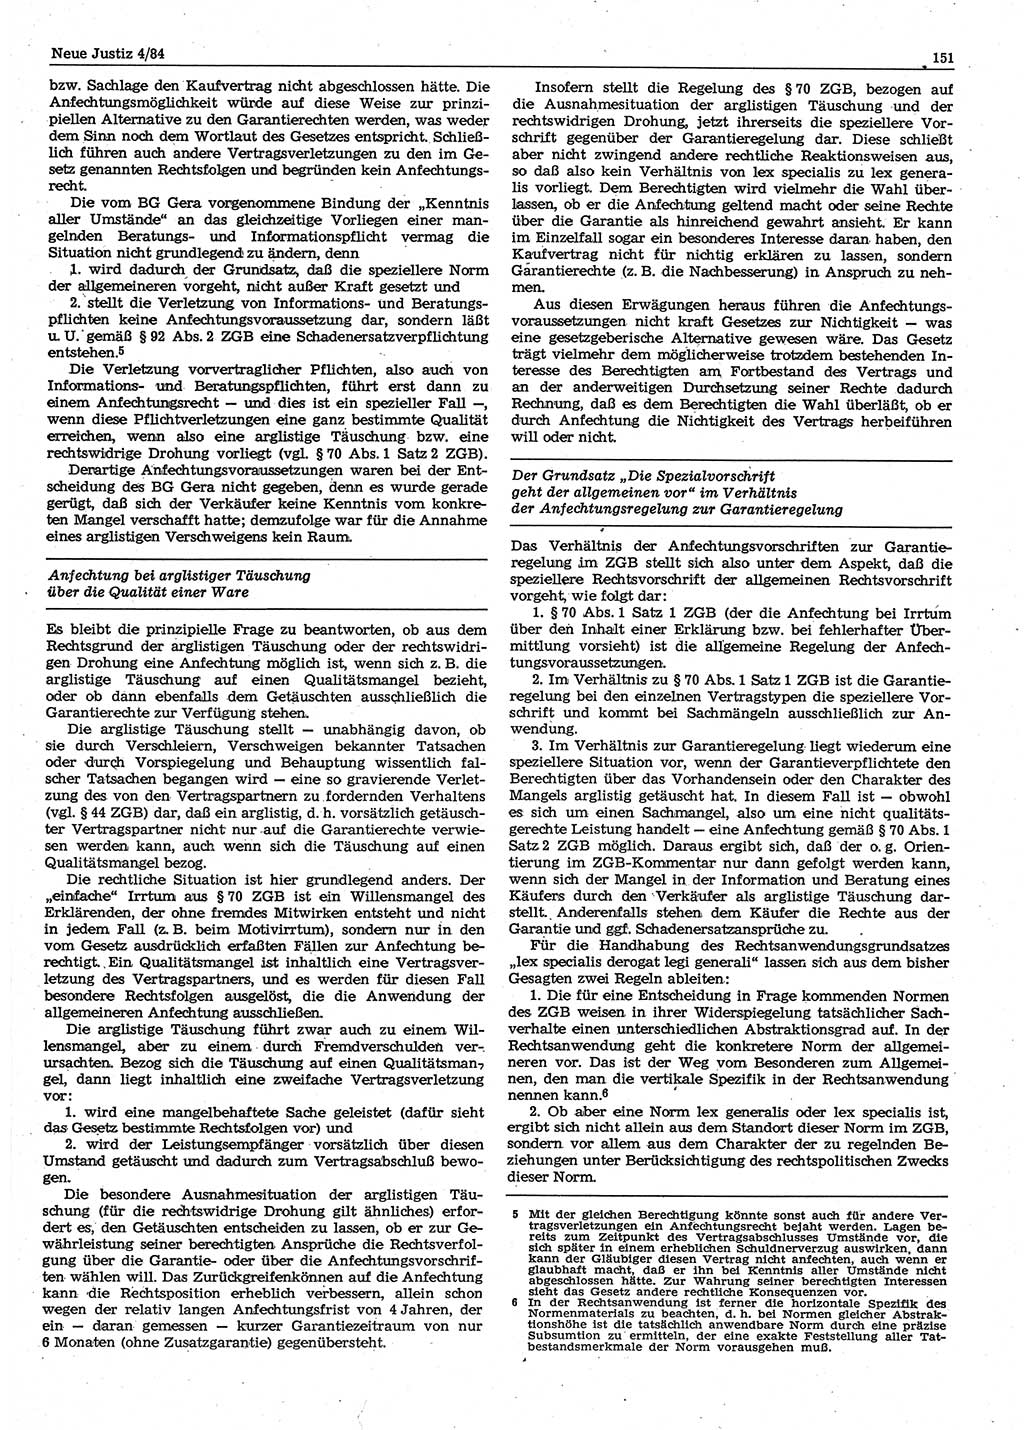 Neue Justiz (NJ), Zeitschrift für sozialistisches Recht und Gesetzlichkeit [Deutsche Demokratische Republik (DDR)], 38. Jahrgang 1984, Seite 151 (NJ DDR 1984, S. 151)